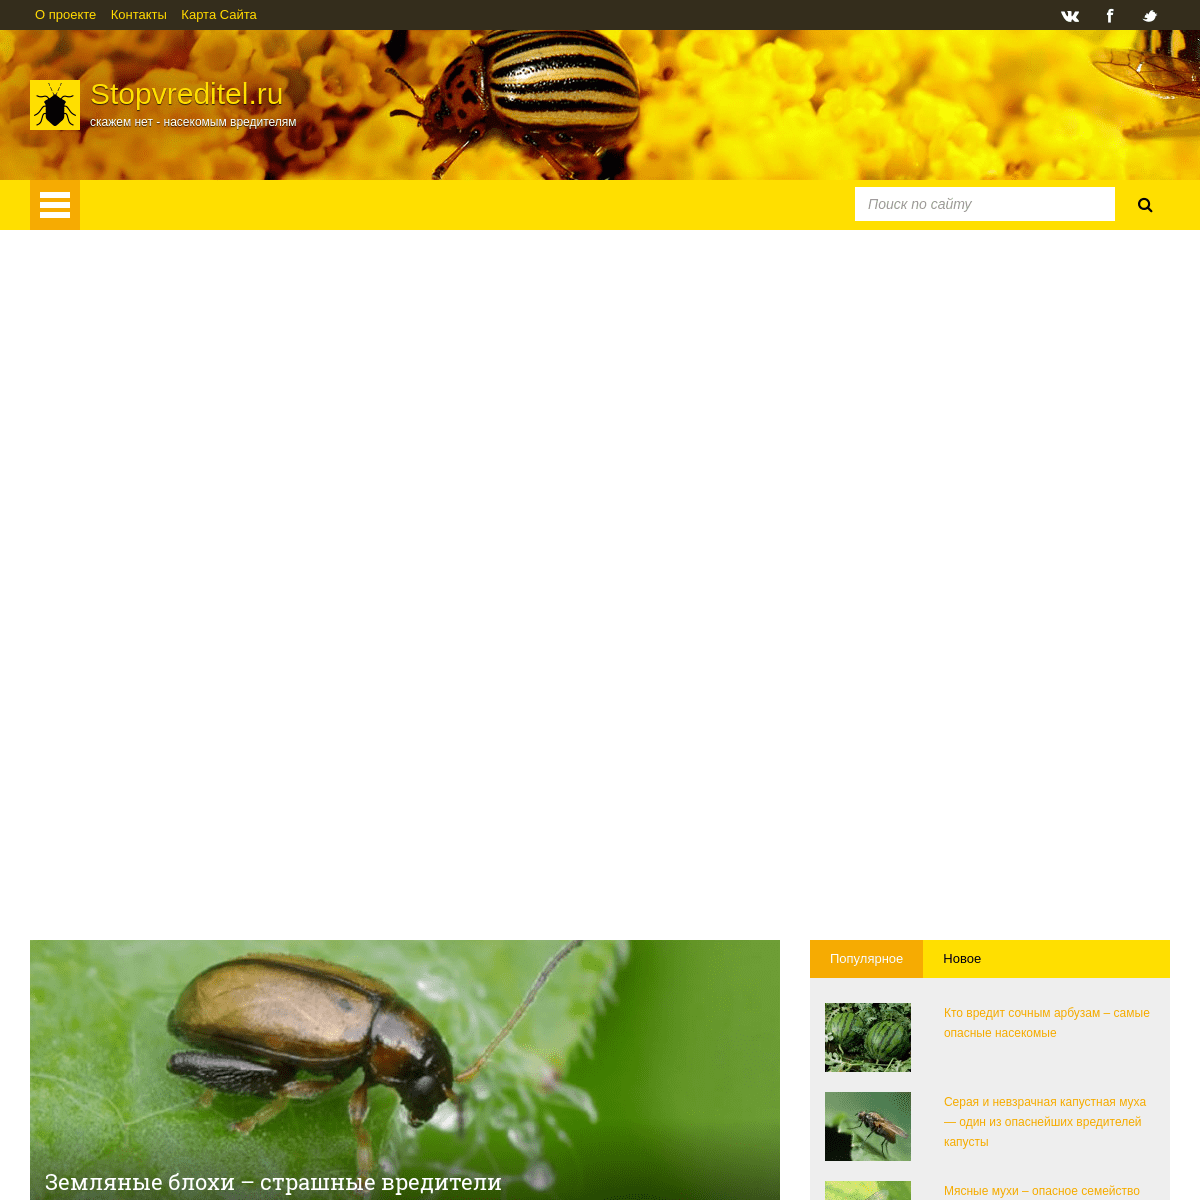 StopVreditel.ru - скажем нет - насекомым вредителям